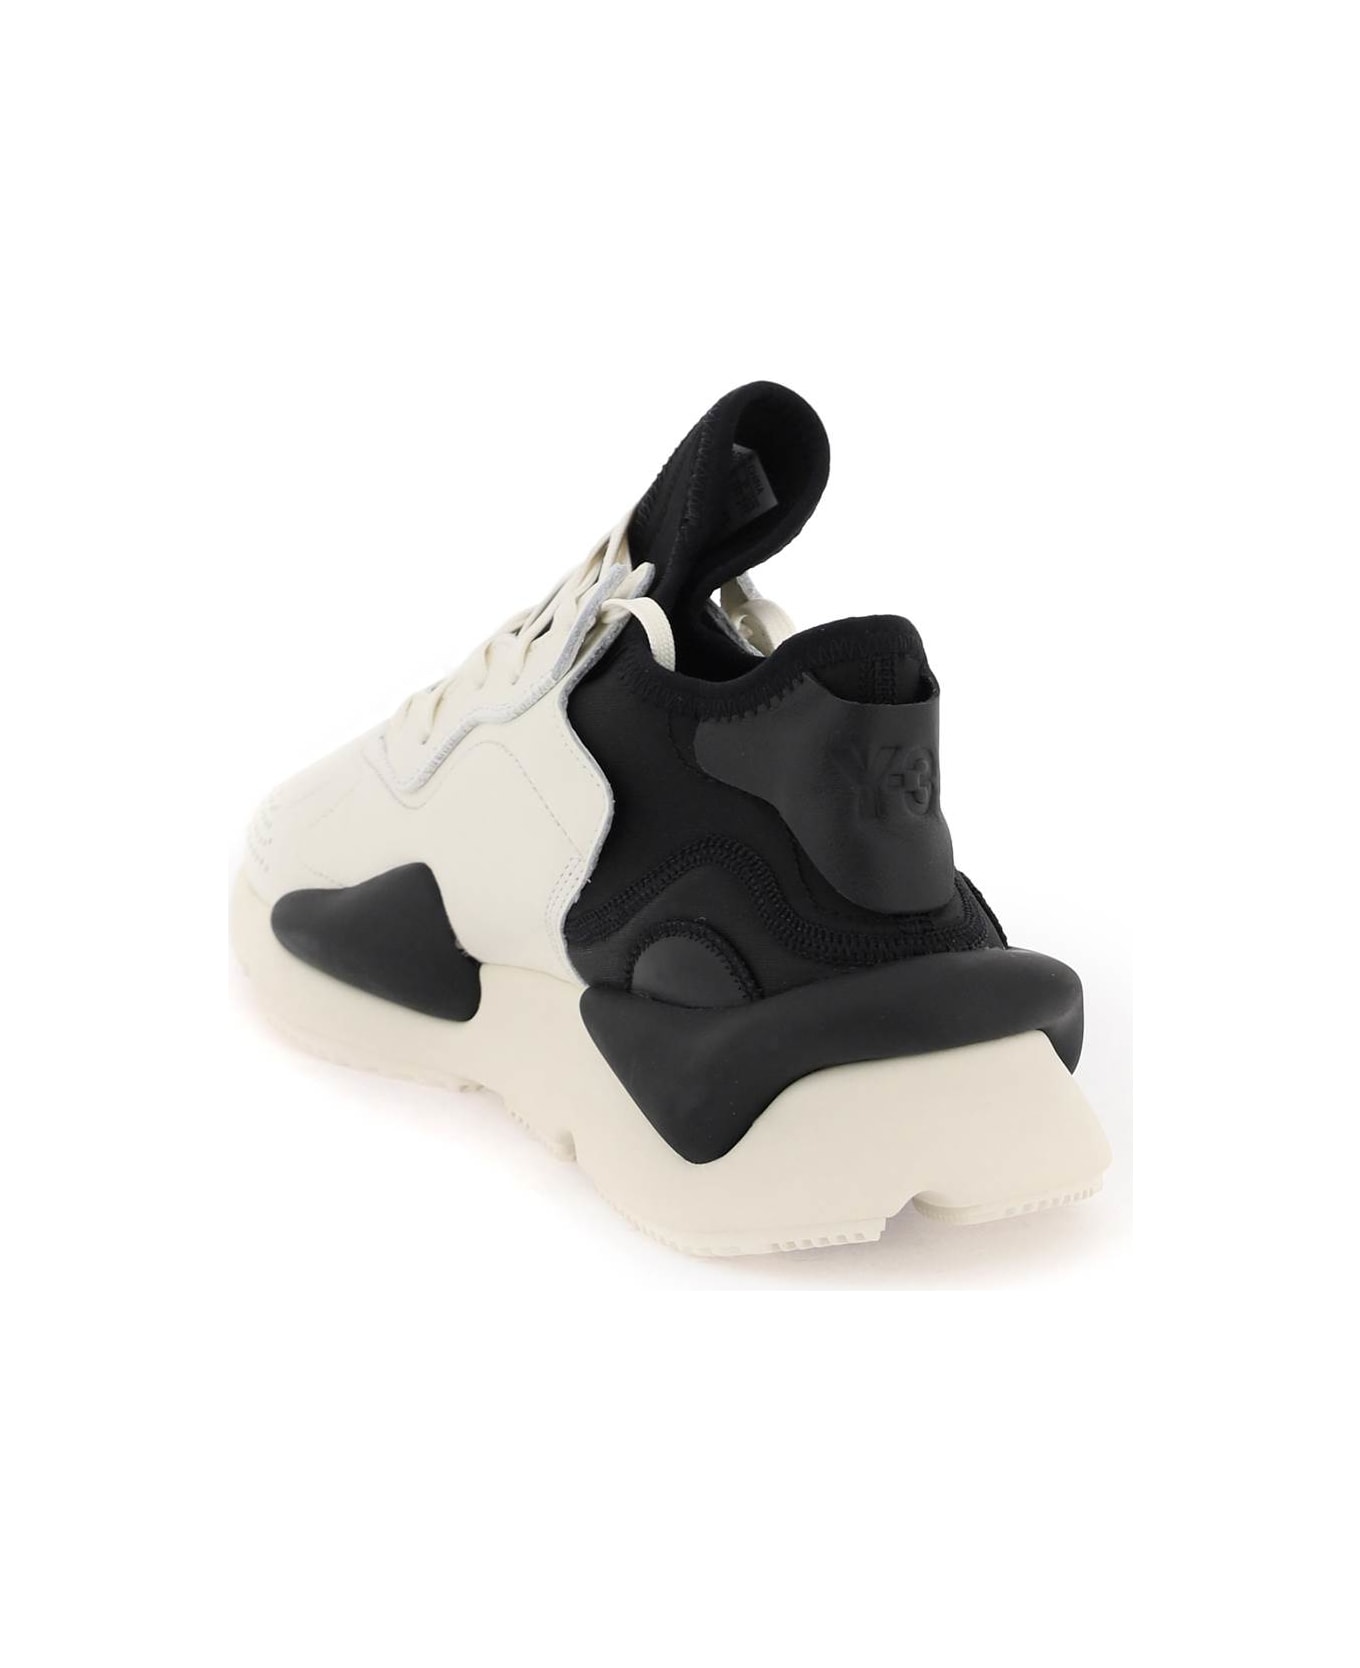 Y-3 'kaiwa' White Leather Sneakers - White